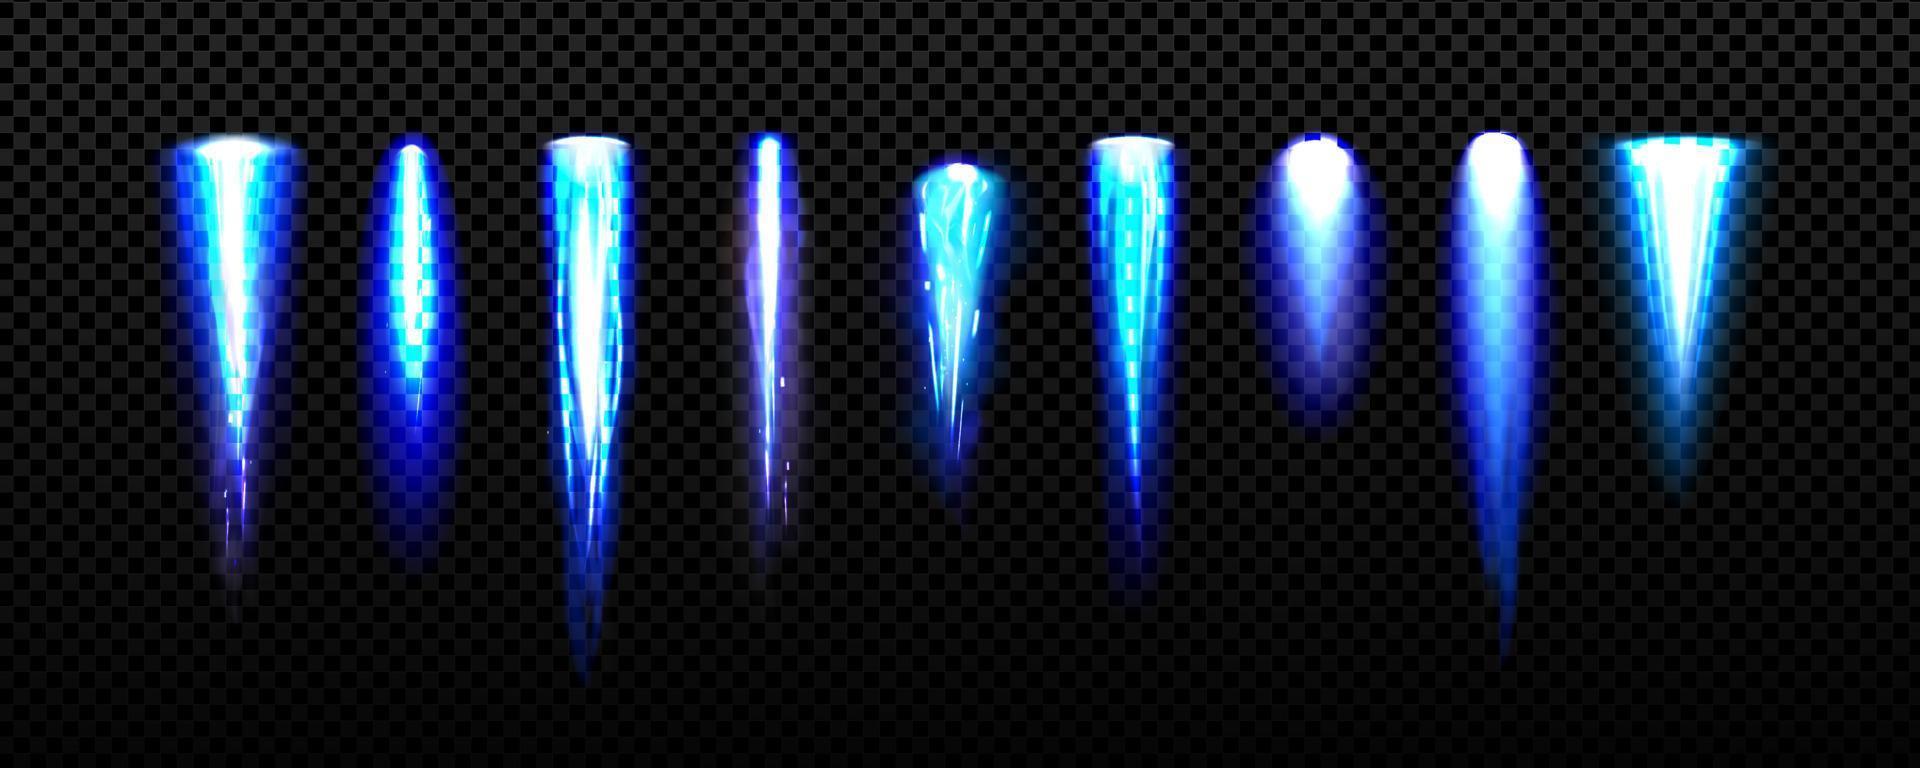 jetpack licht, blauw brand vlammen van ruimte raket vector